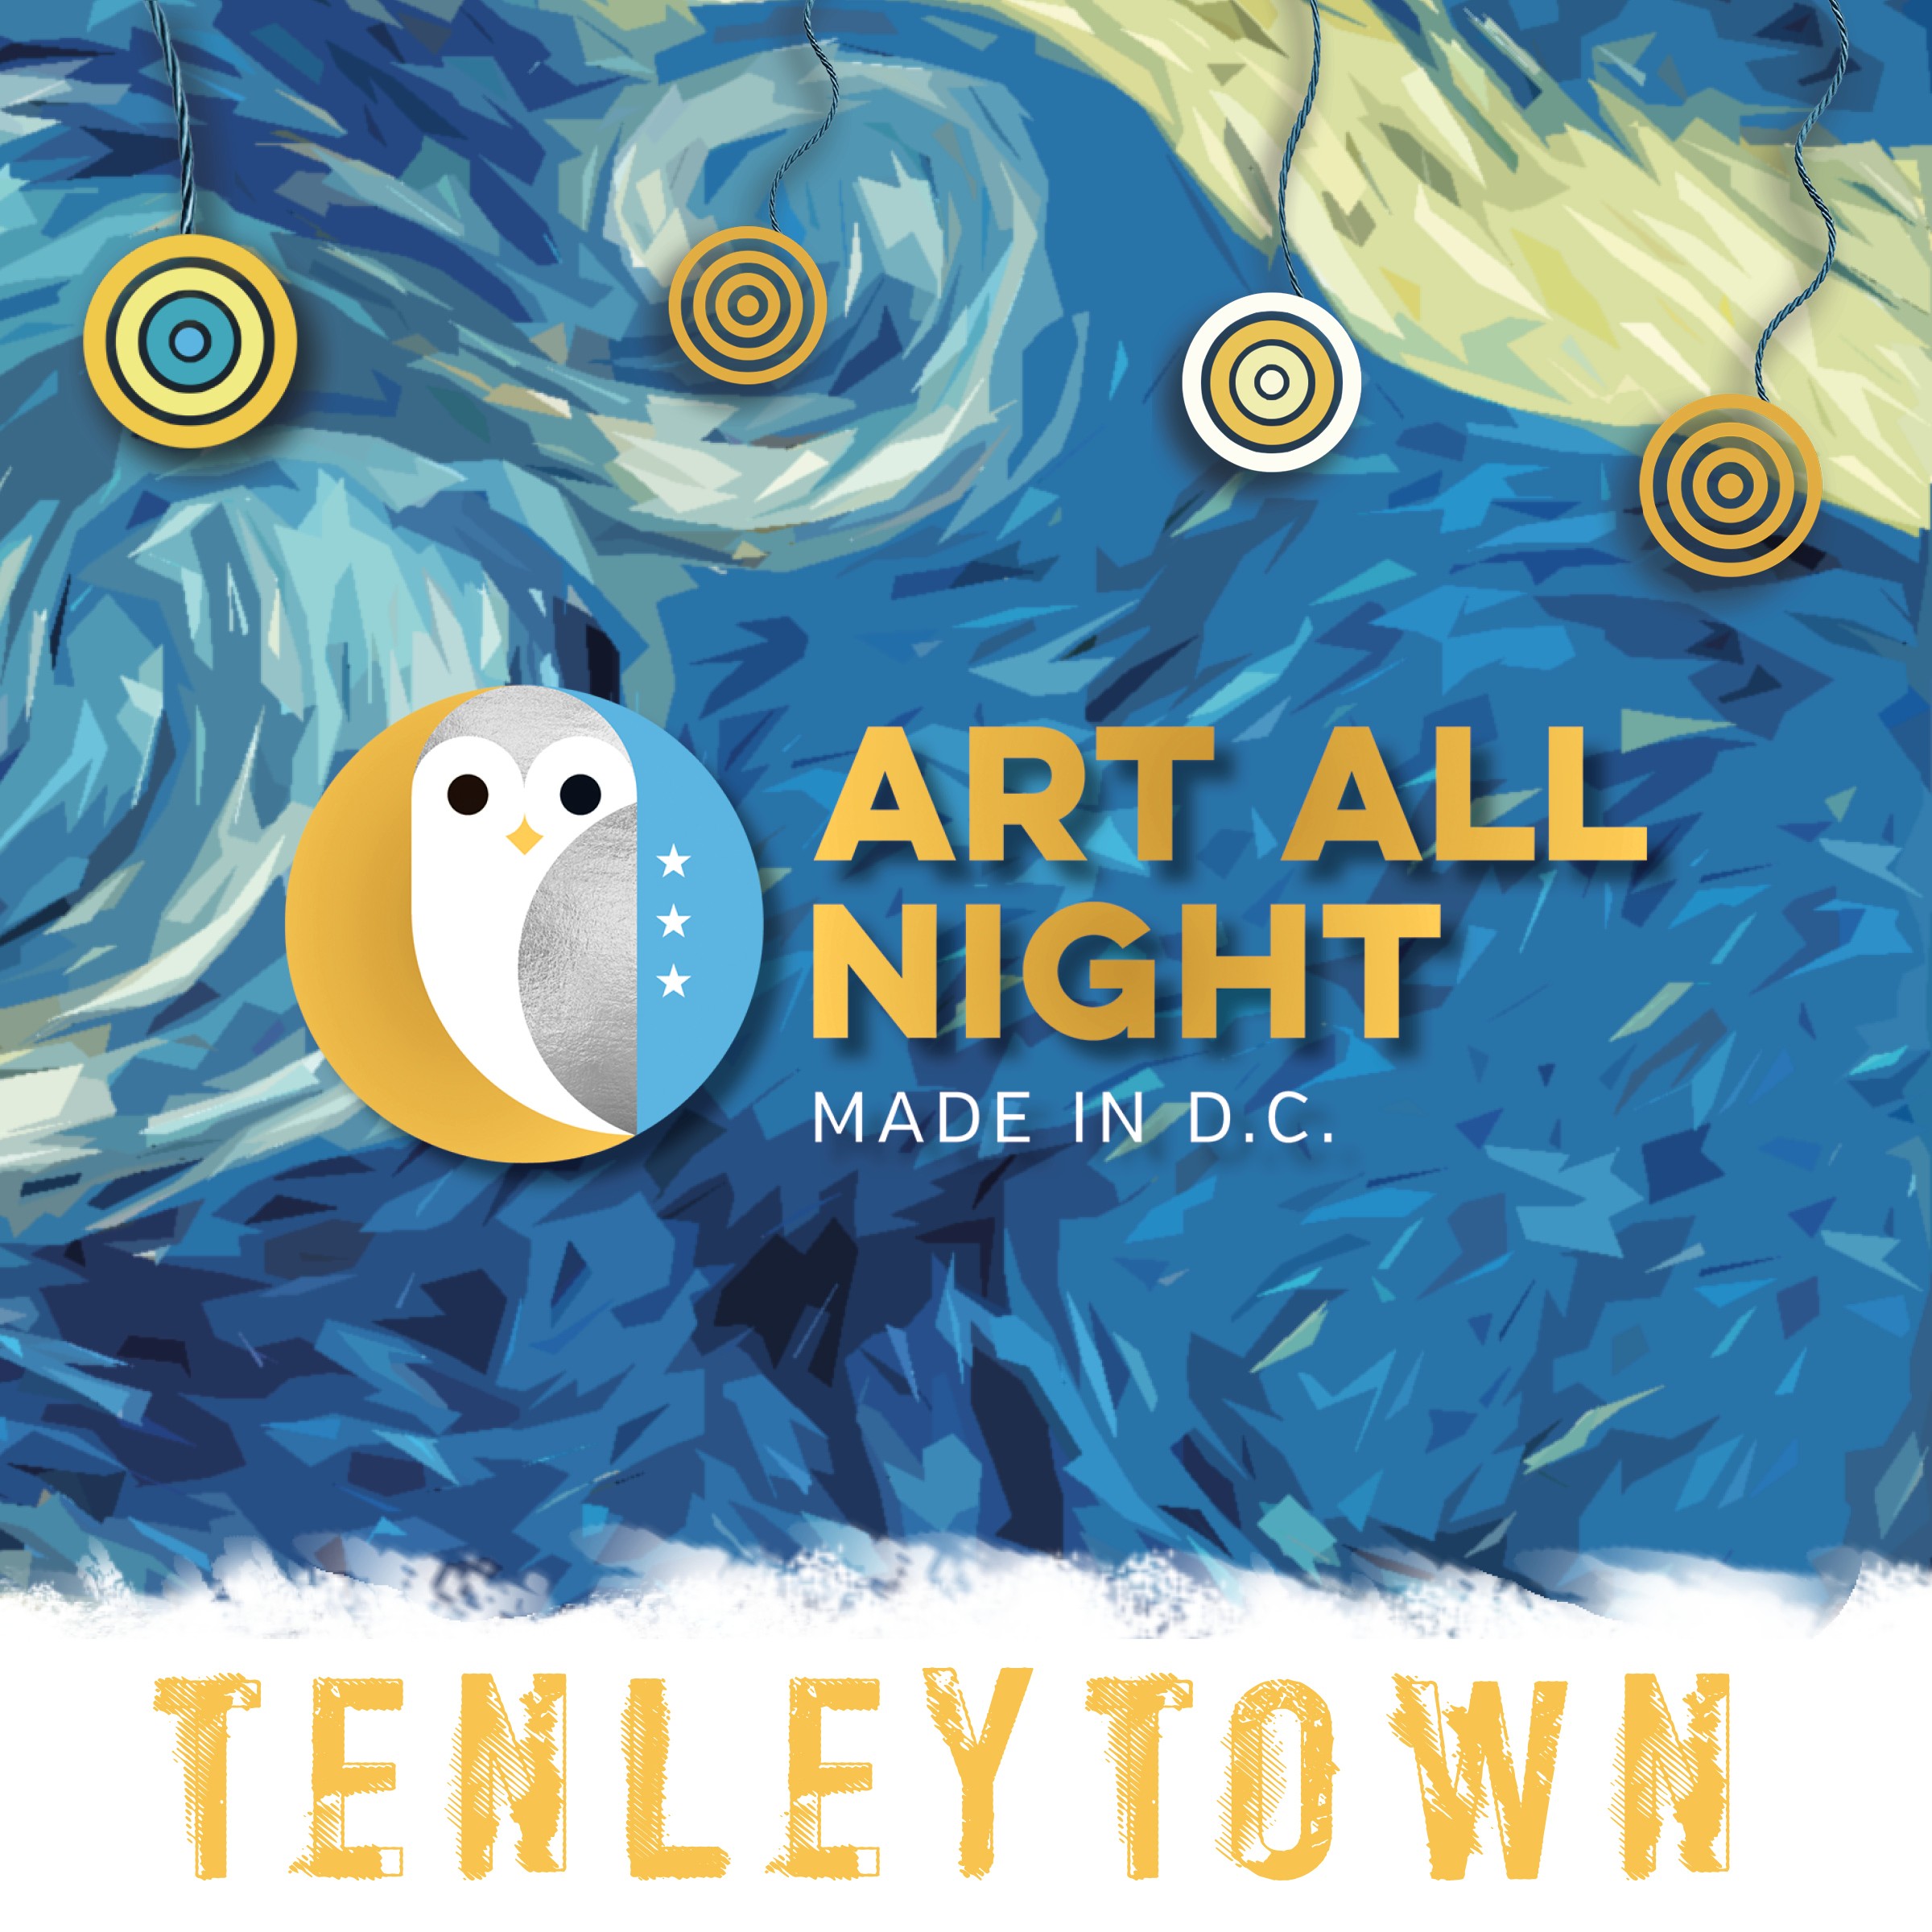 Art All Night returns to Tenleytown, September 23